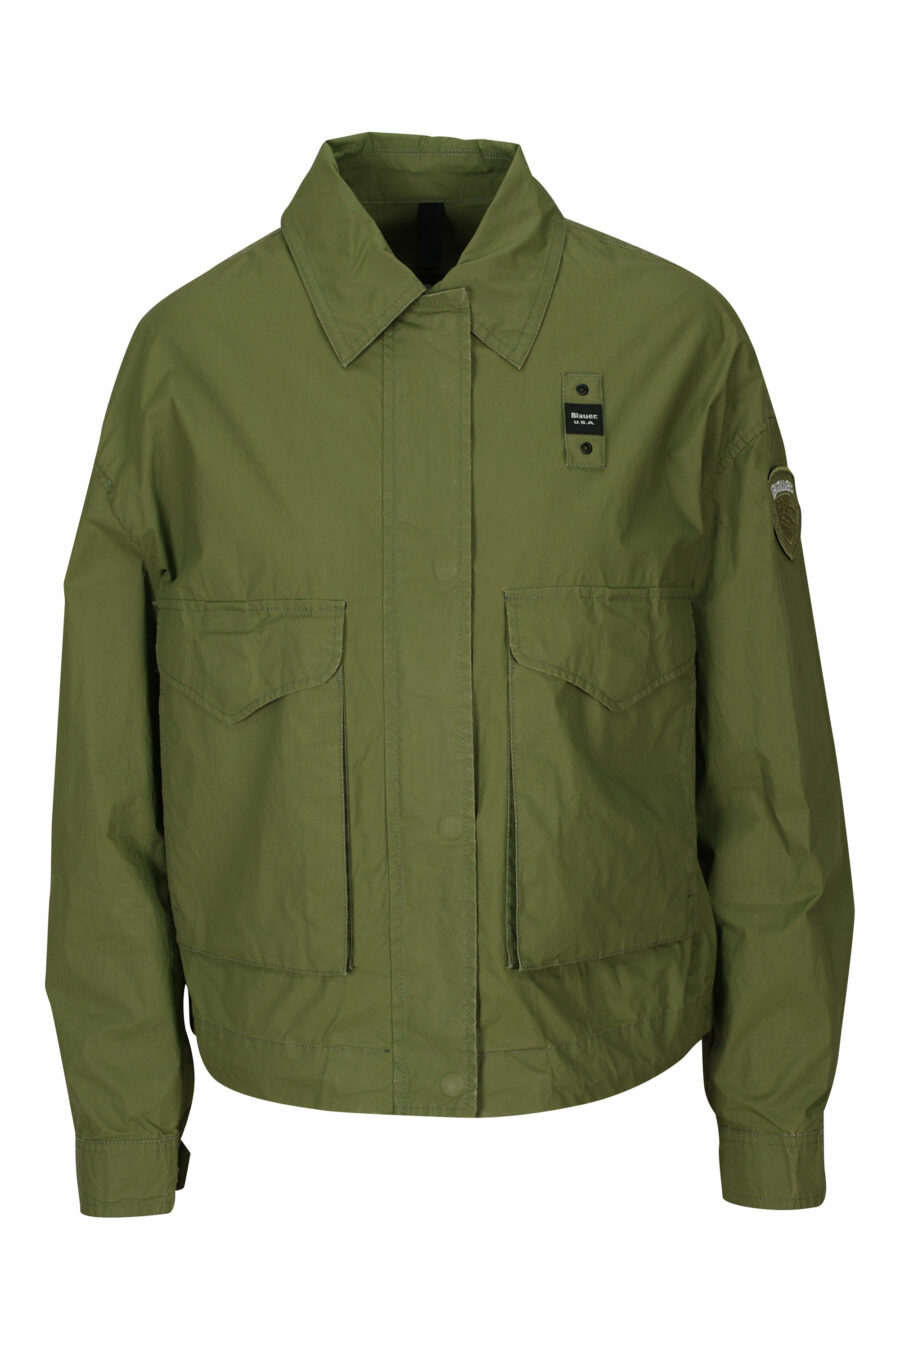 Veste vert militaire avec poches avant et patch logo sur le côté - 8058610712600